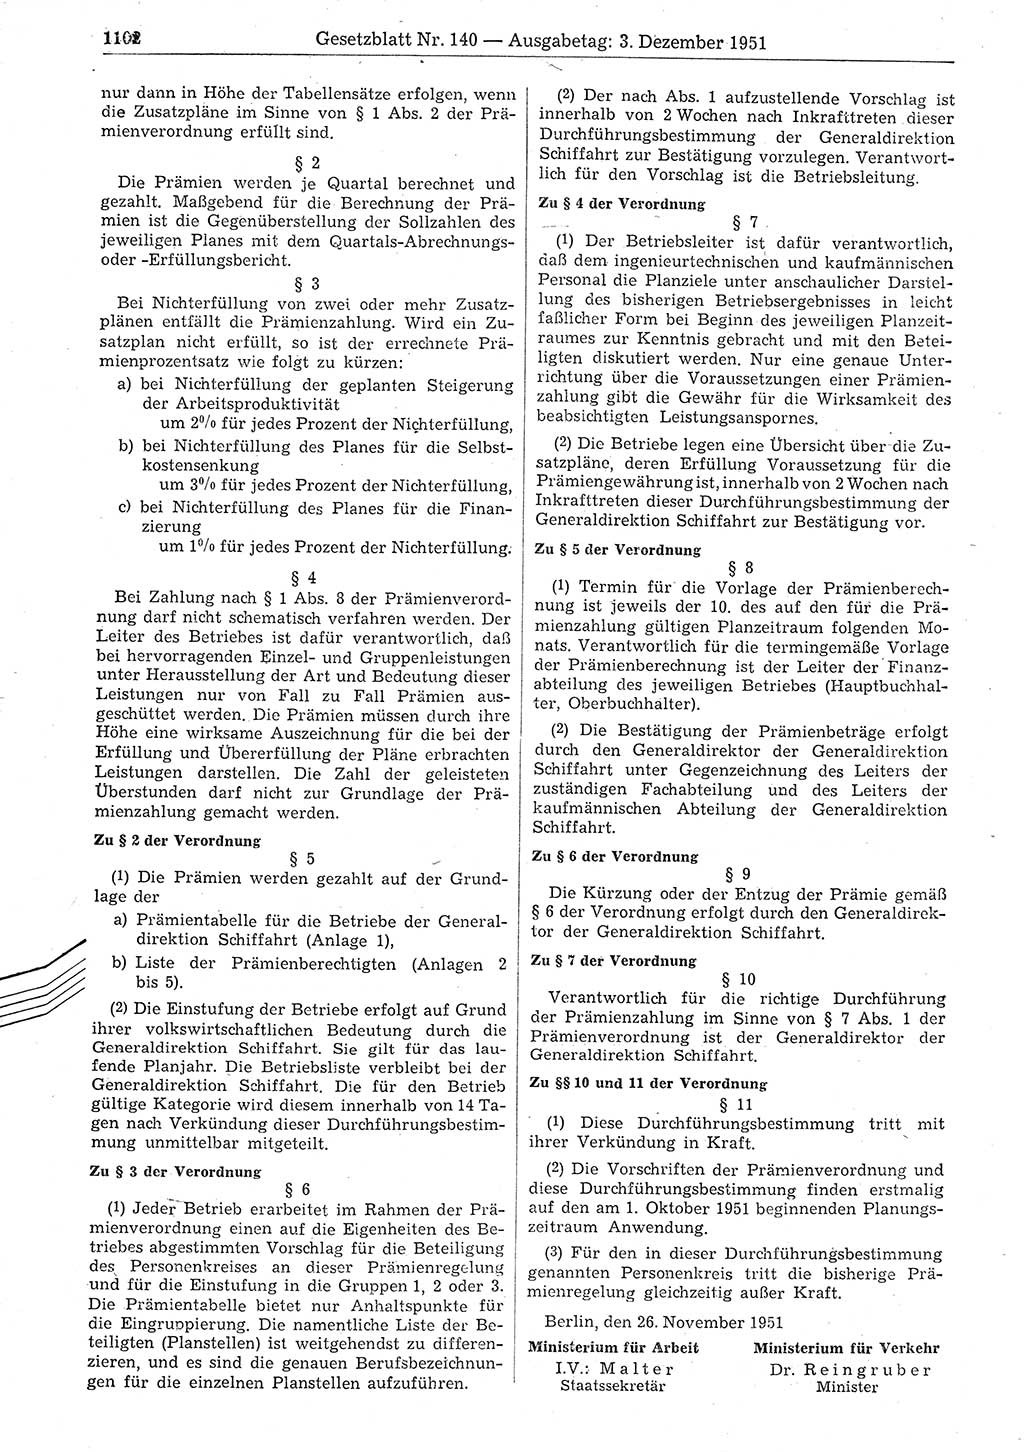 Gesetzblatt (GBl.) der Deutschen Demokratischen Republik (DDR) 1951, Seite 1102 (GBl. DDR 1951, S. 1102)